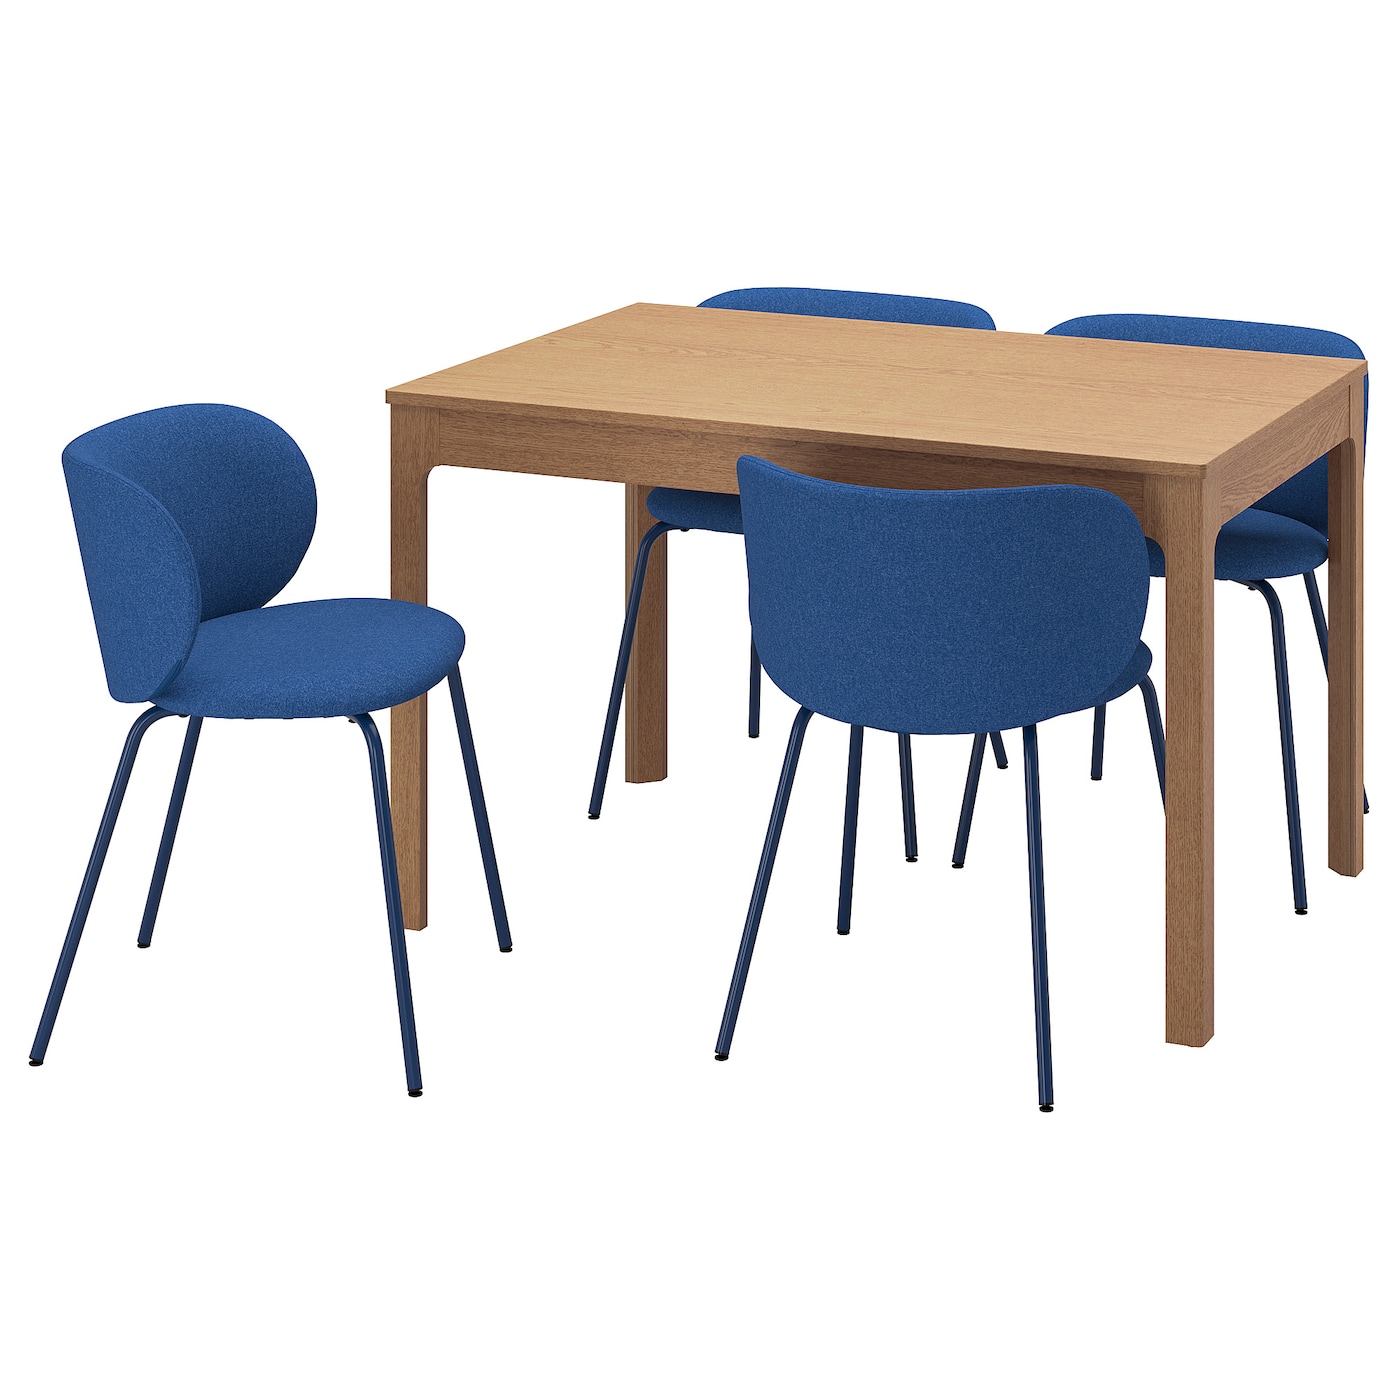 Стол и 4 стула - EKEDALEN / KRYLBO IKEA/ ЭКЕДАЛЕН/КРЫЛЬБО ИКЕА, 180/120х80х75   см, синий/коричневый